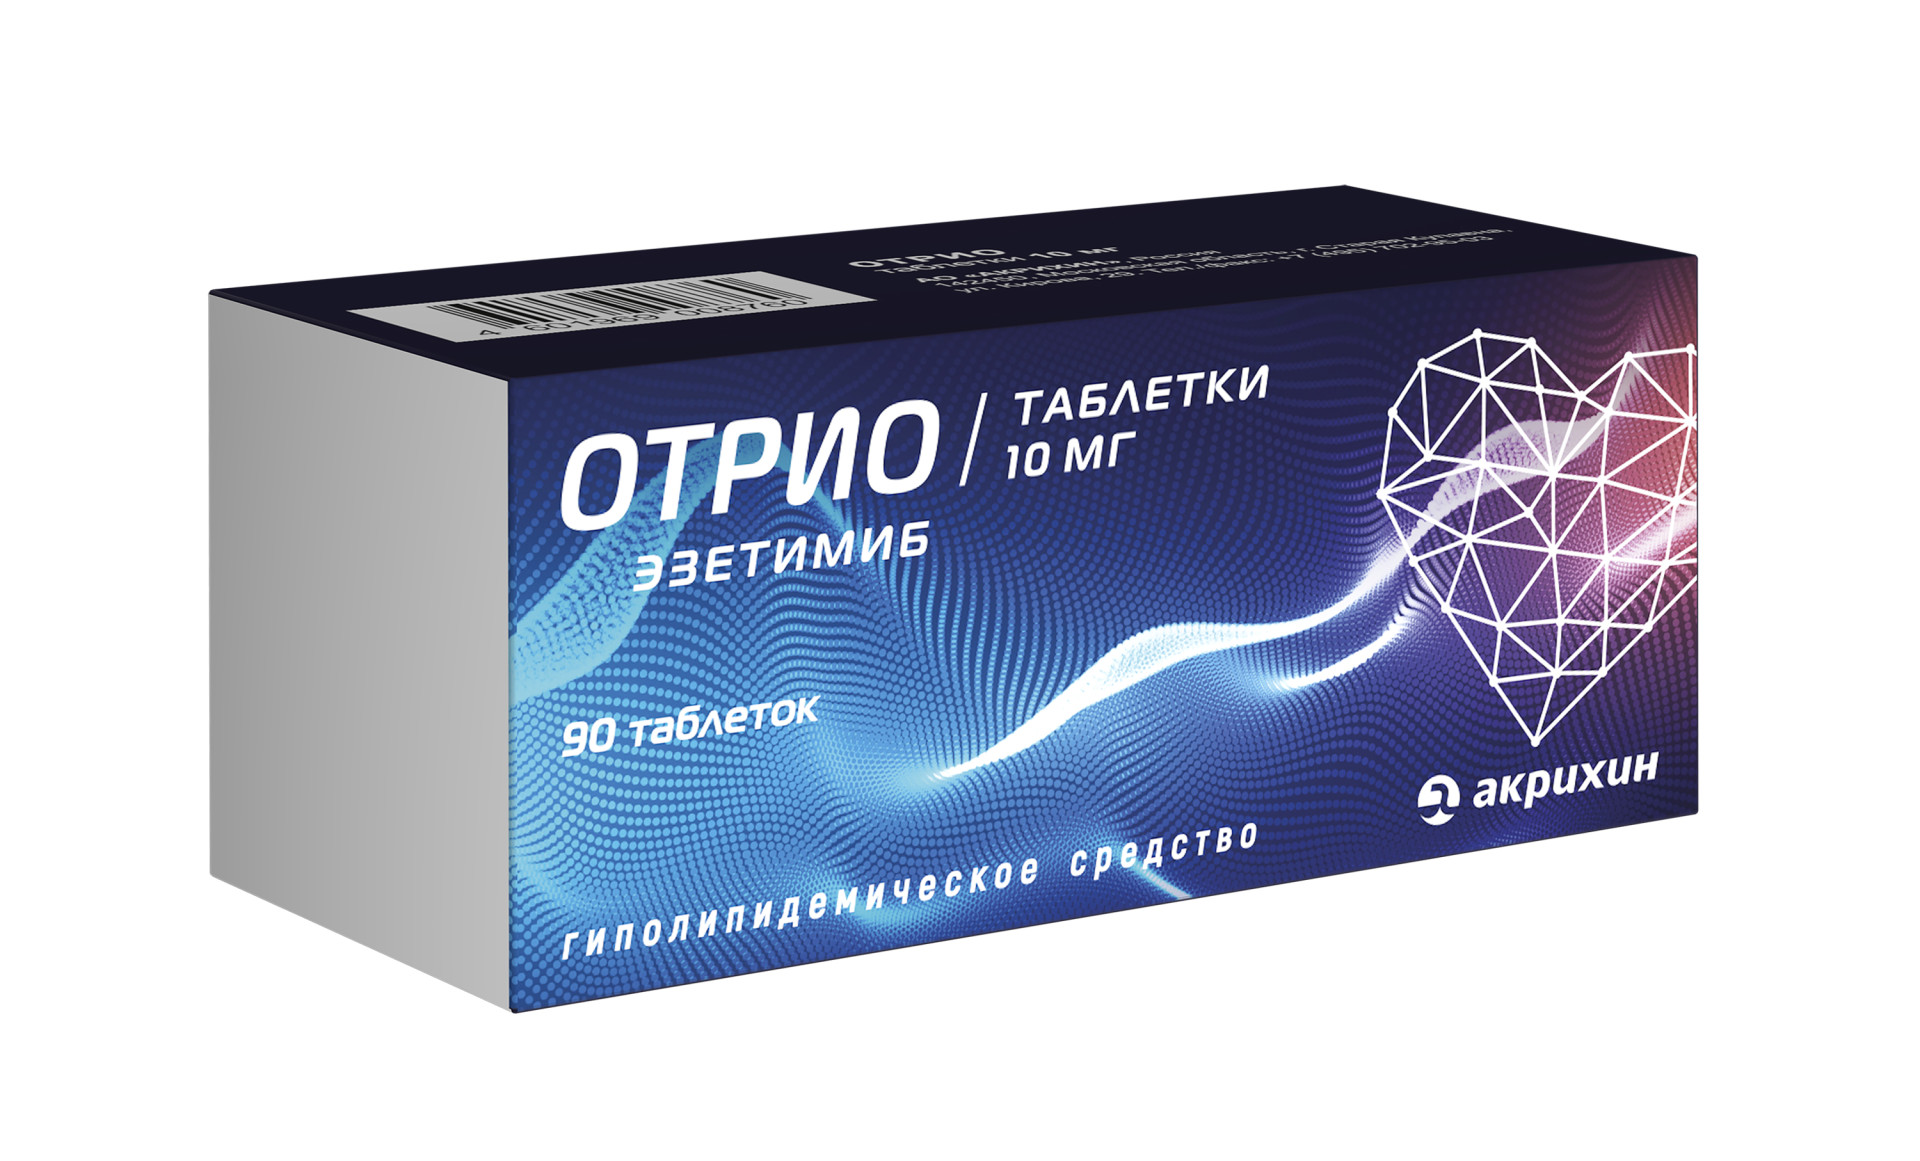 Отрио таблетки 10мг №90   по цене от 1662 рублей